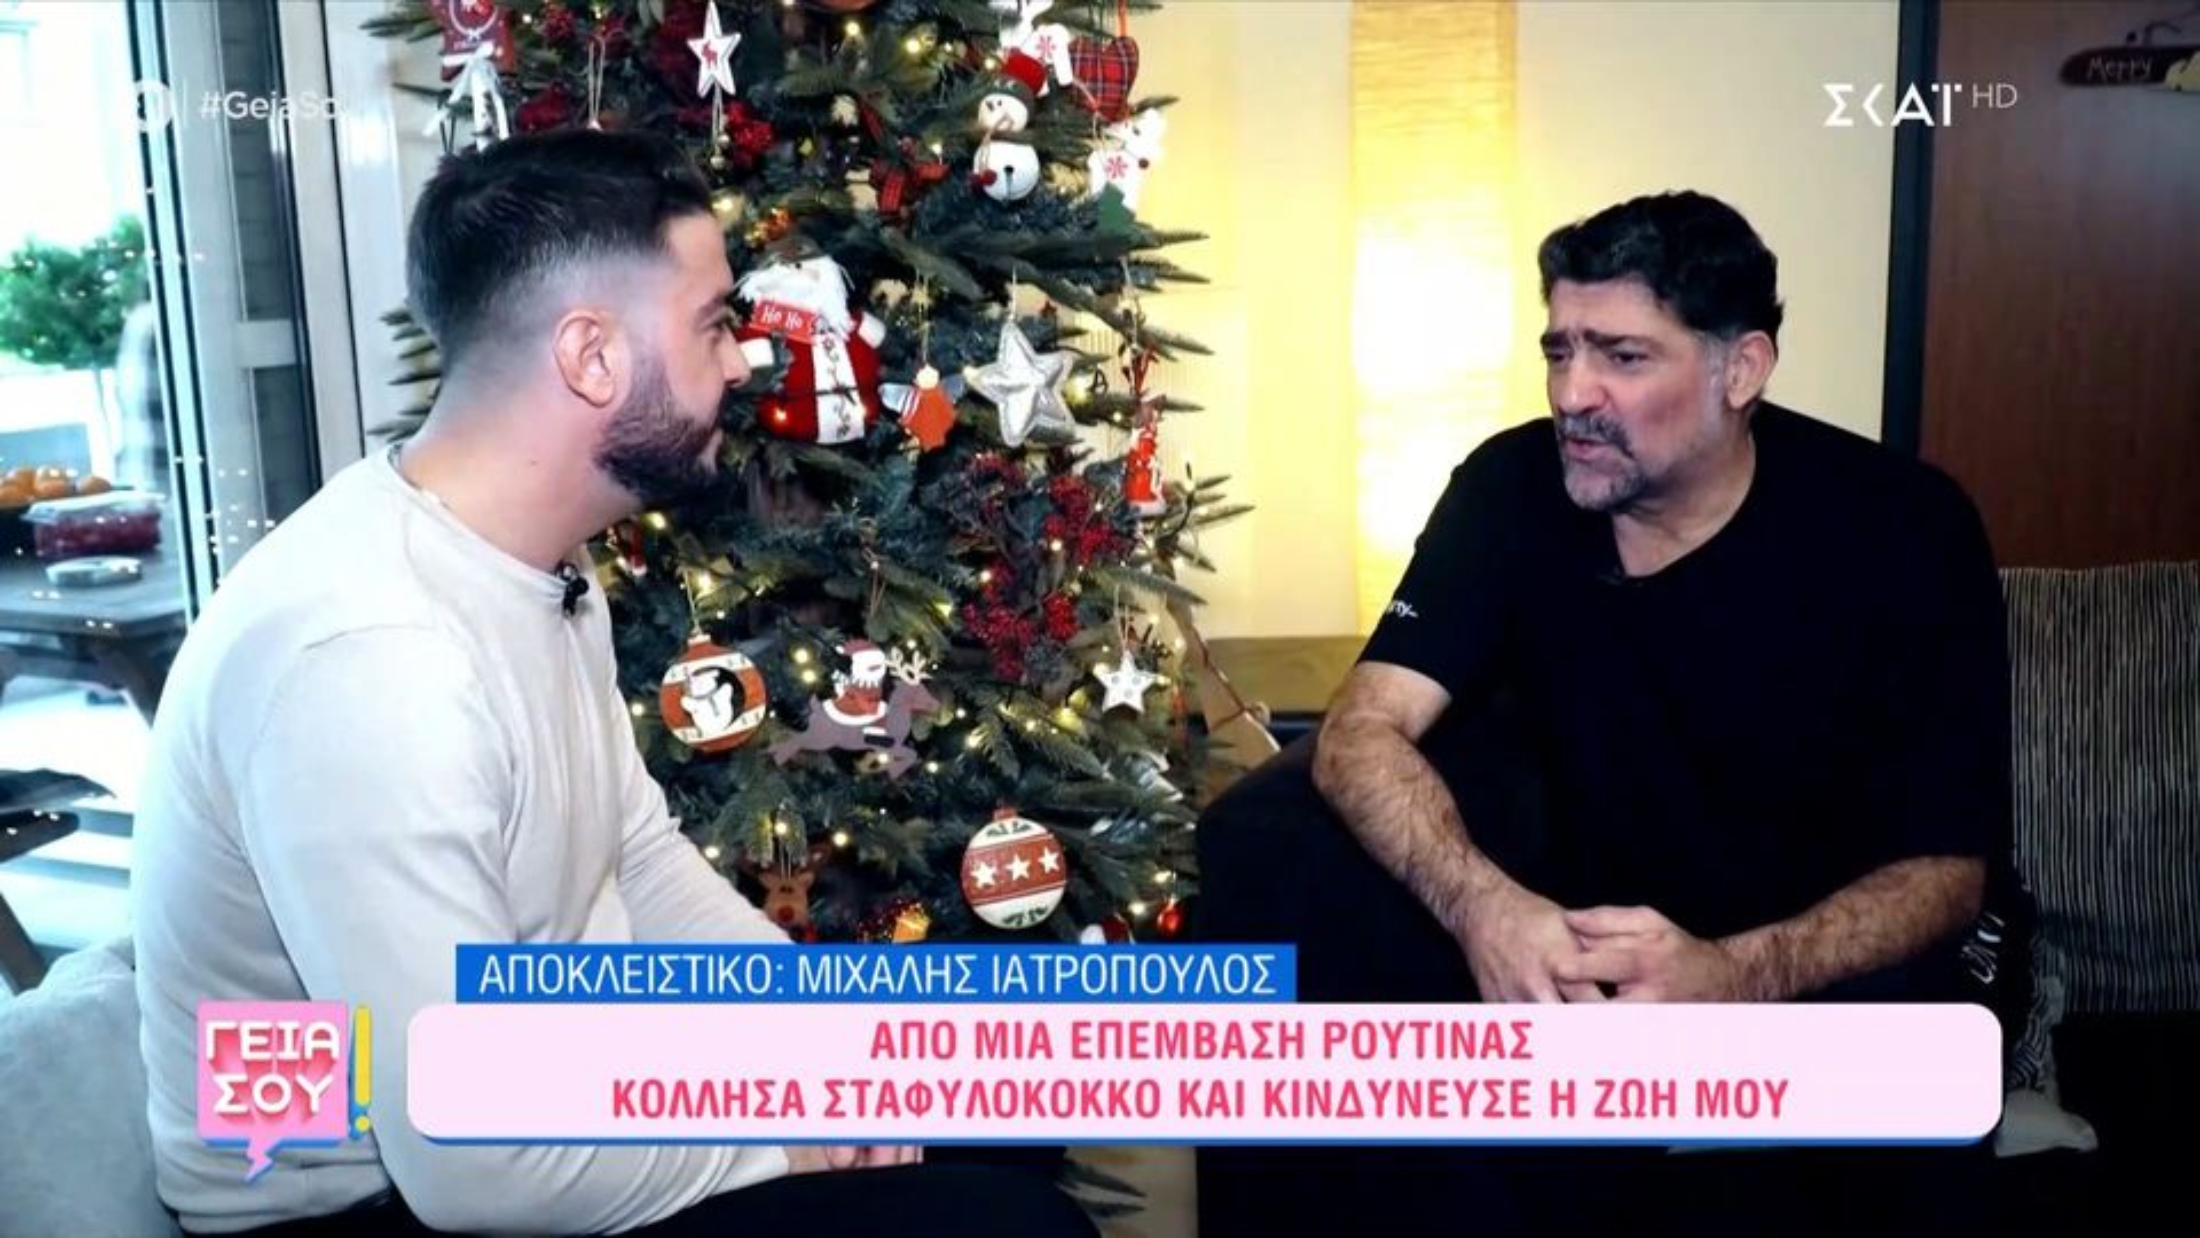 Συγκλονίζει ο Μιχάλης Ιατρόπουλος: «Έπαιζα με τις πιθανότητες να σας αποχαιρετήσω» (VIDEO)